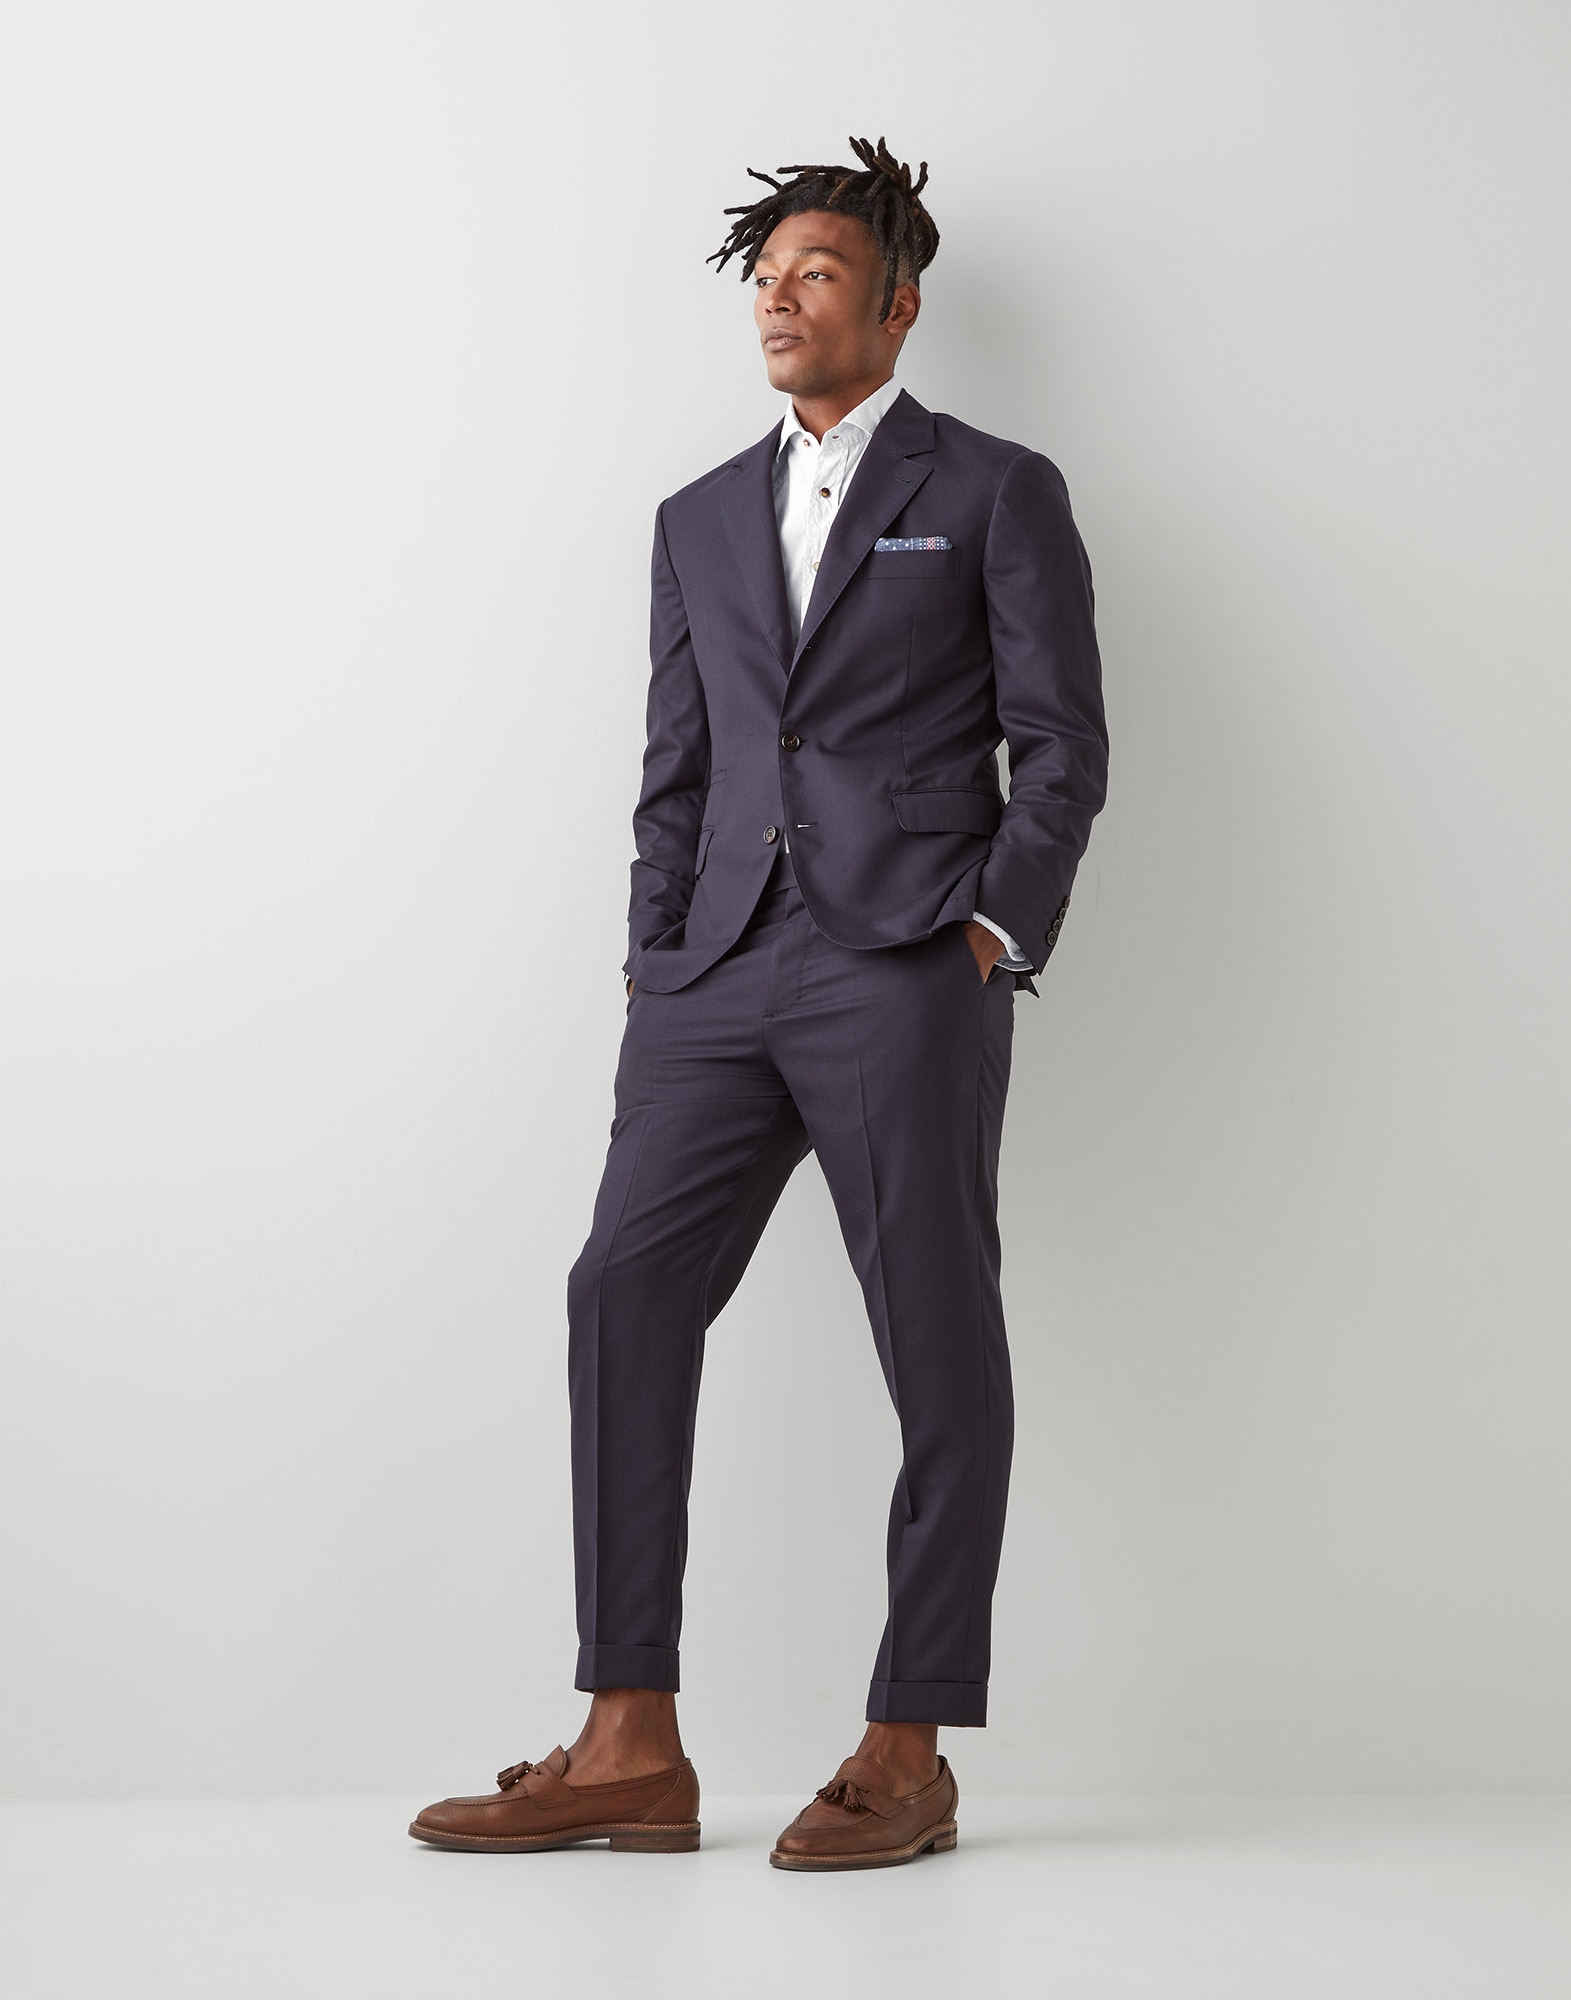 Men's elegant suits | Brunello Cucinelli